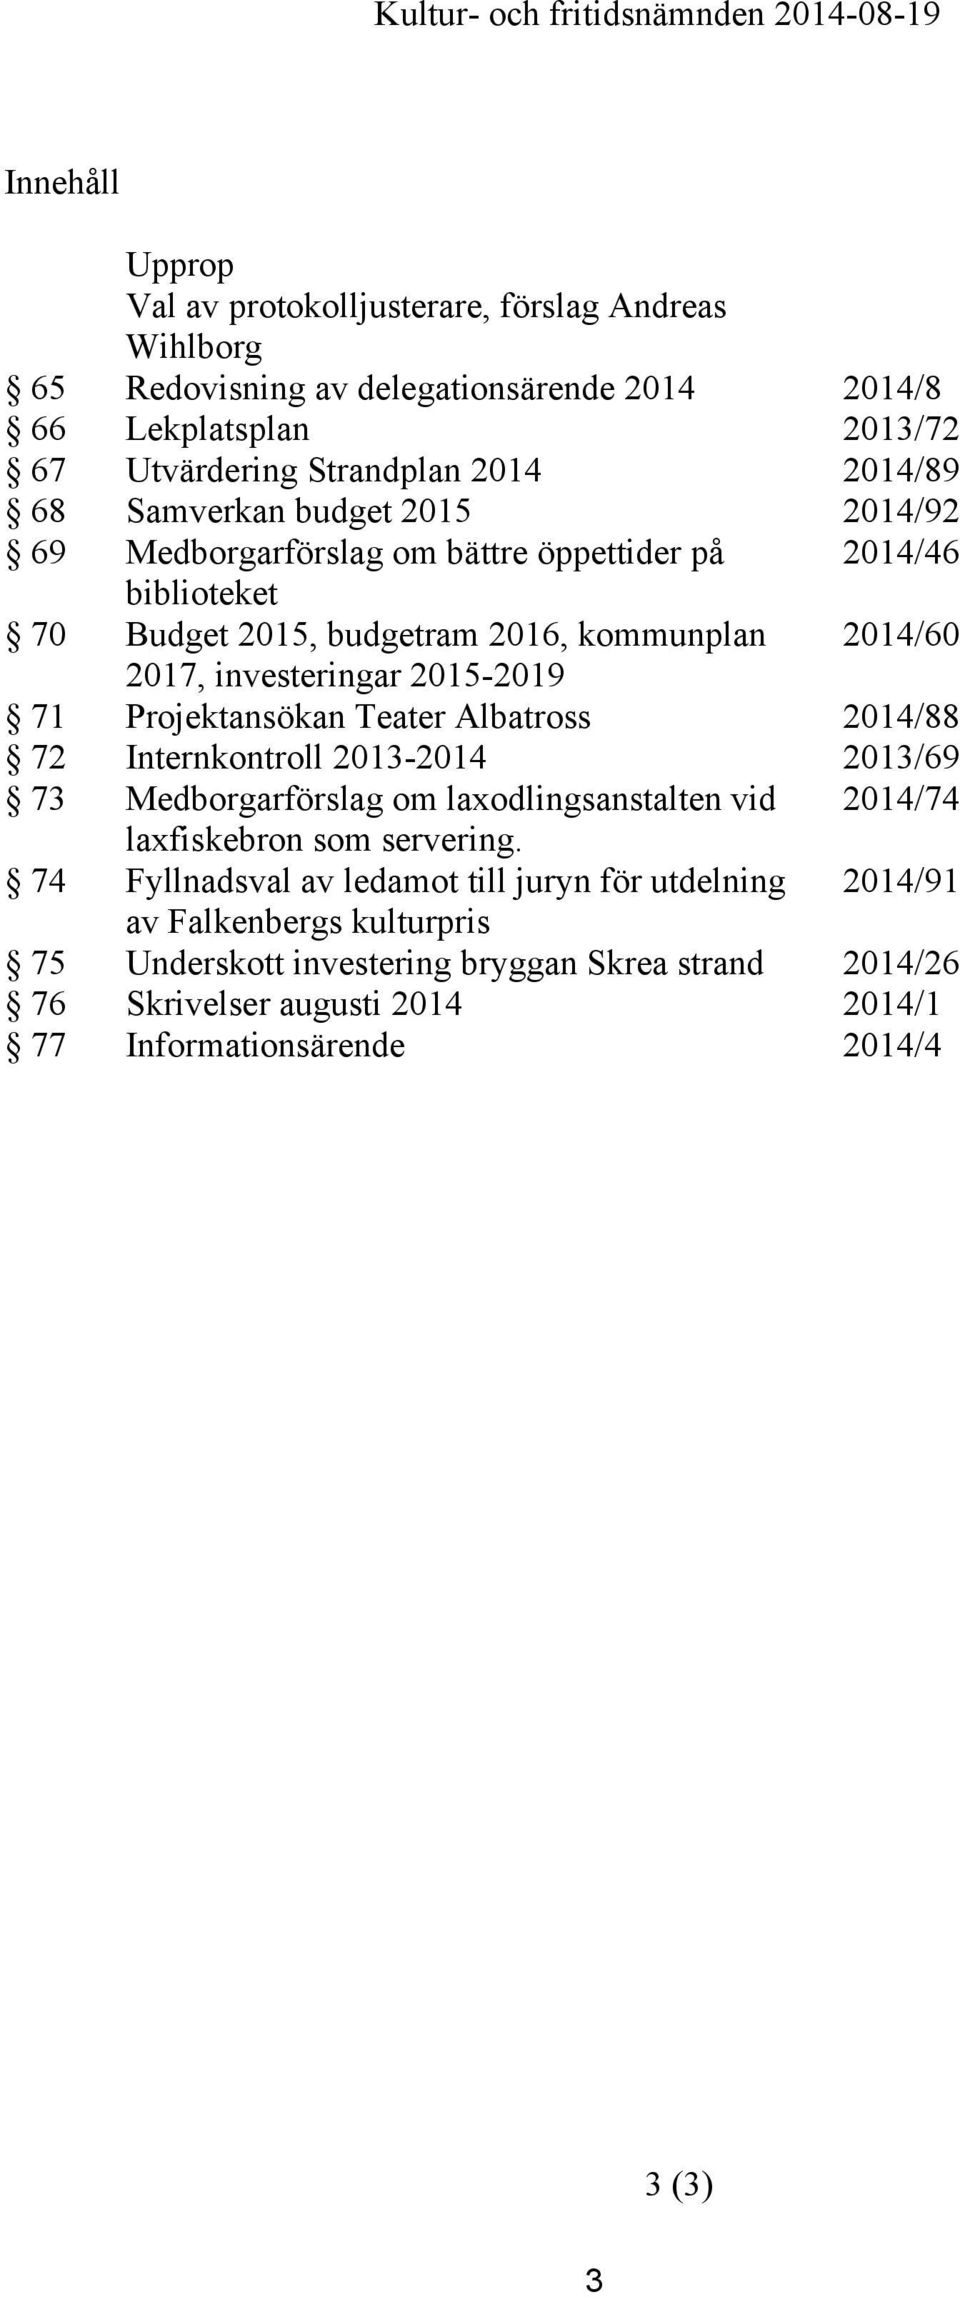 Projektansökan Teater Albatross 2014/88 72 Internkontroll 2013-2014 2013/69 73 Medborgarförslag om laxodlingsanstalten vid 2014/74 laxfiskebron som servering.